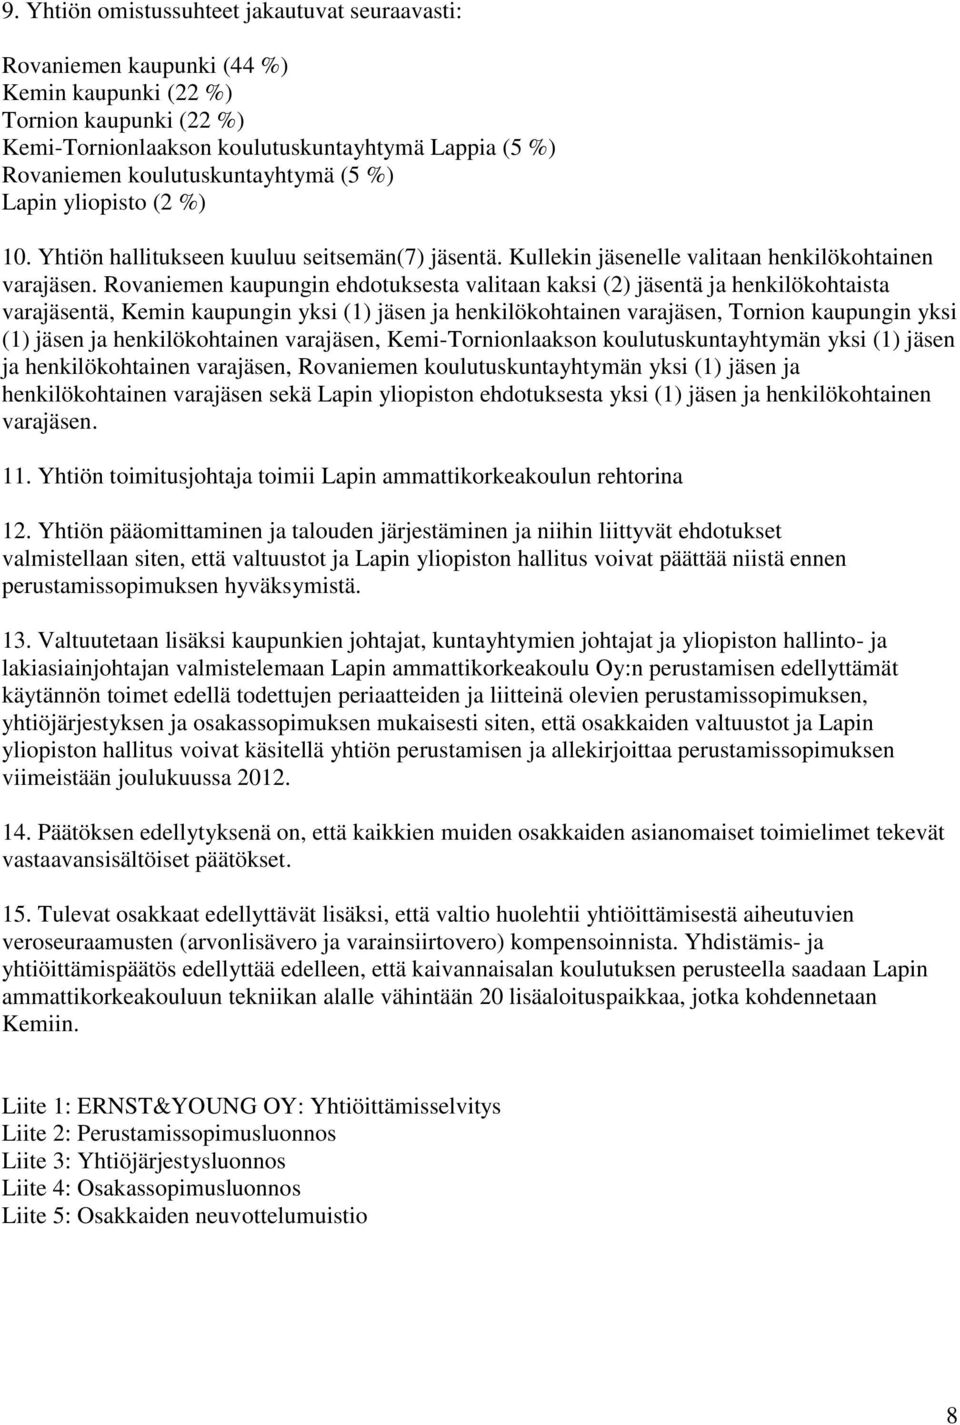 Rovaniemen kaupungin ehdotuksesta valitaan kaksi (2) jäsentä ja henkilökohtaista varajäsentä, Kemin kaupungin yksi (1) jäsen ja henkilökohtainen varajäsen, Tornion kaupungin yksi (1) jäsen ja